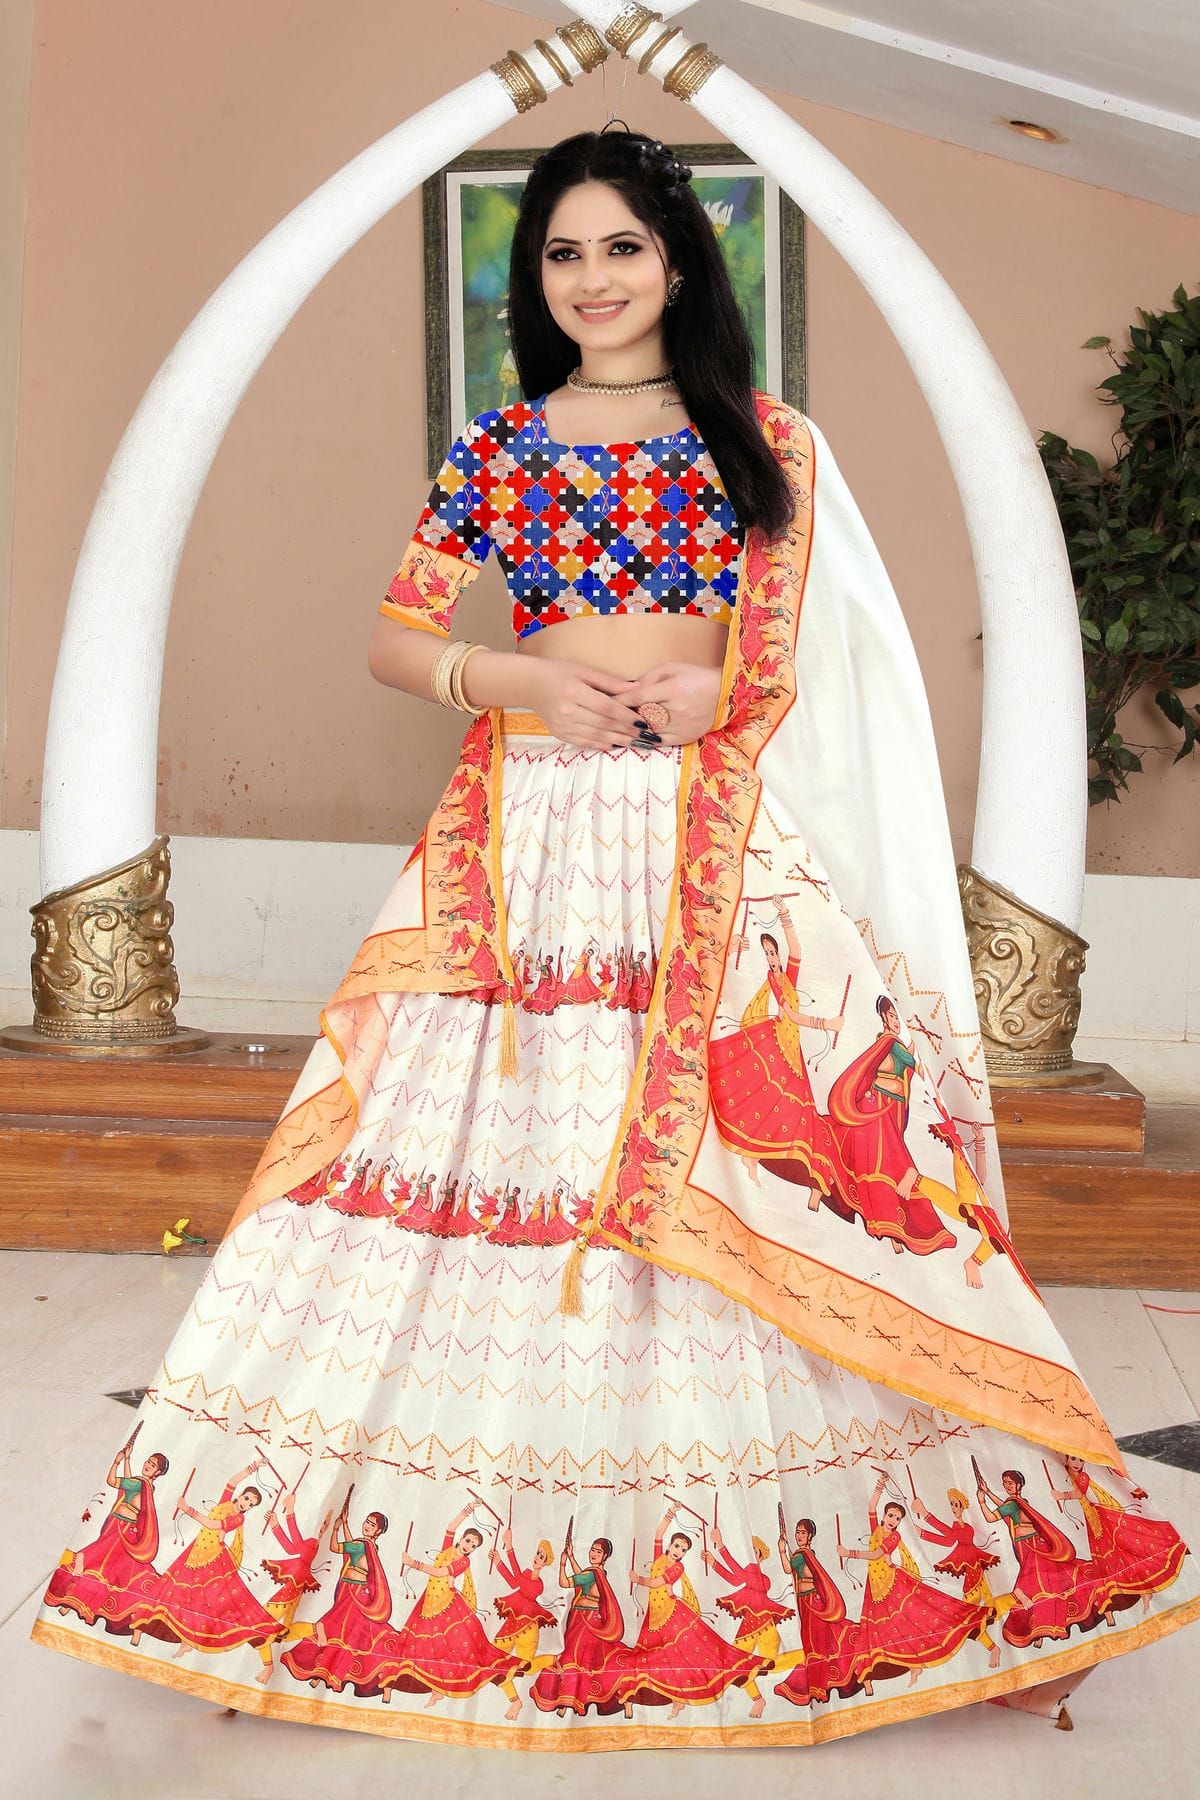 Sabyasachi Inspired Designer Lehenga Choli With Embroidery Work Wedding  Lehenga Choli Party Wear Lehenga Choli Indian Women,lengha Choli - Etsy |  Indian bridal dress, Party wear lehenga, Indian bride outfits